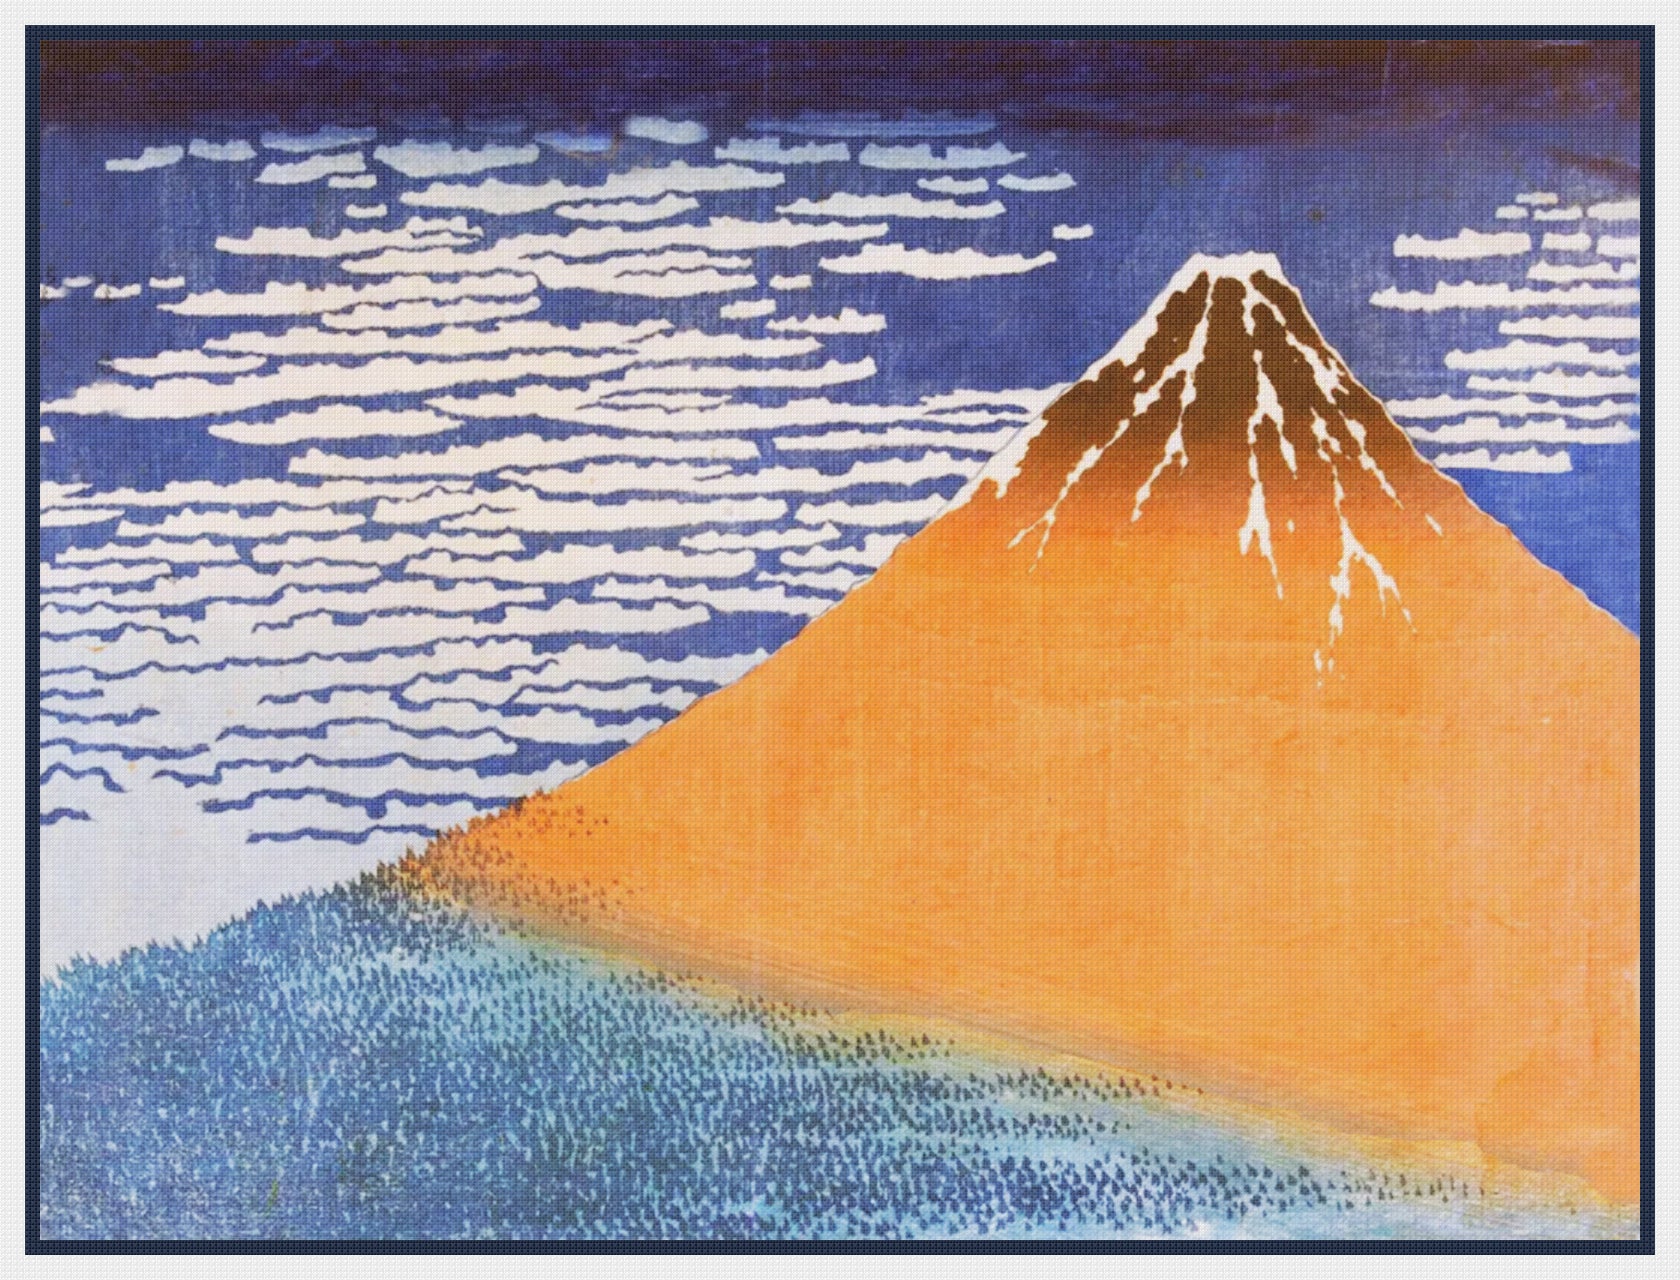 Asian Japanese Mount Fuji Fine Wind by Hokusai Counted Cross Stitch Pa ...